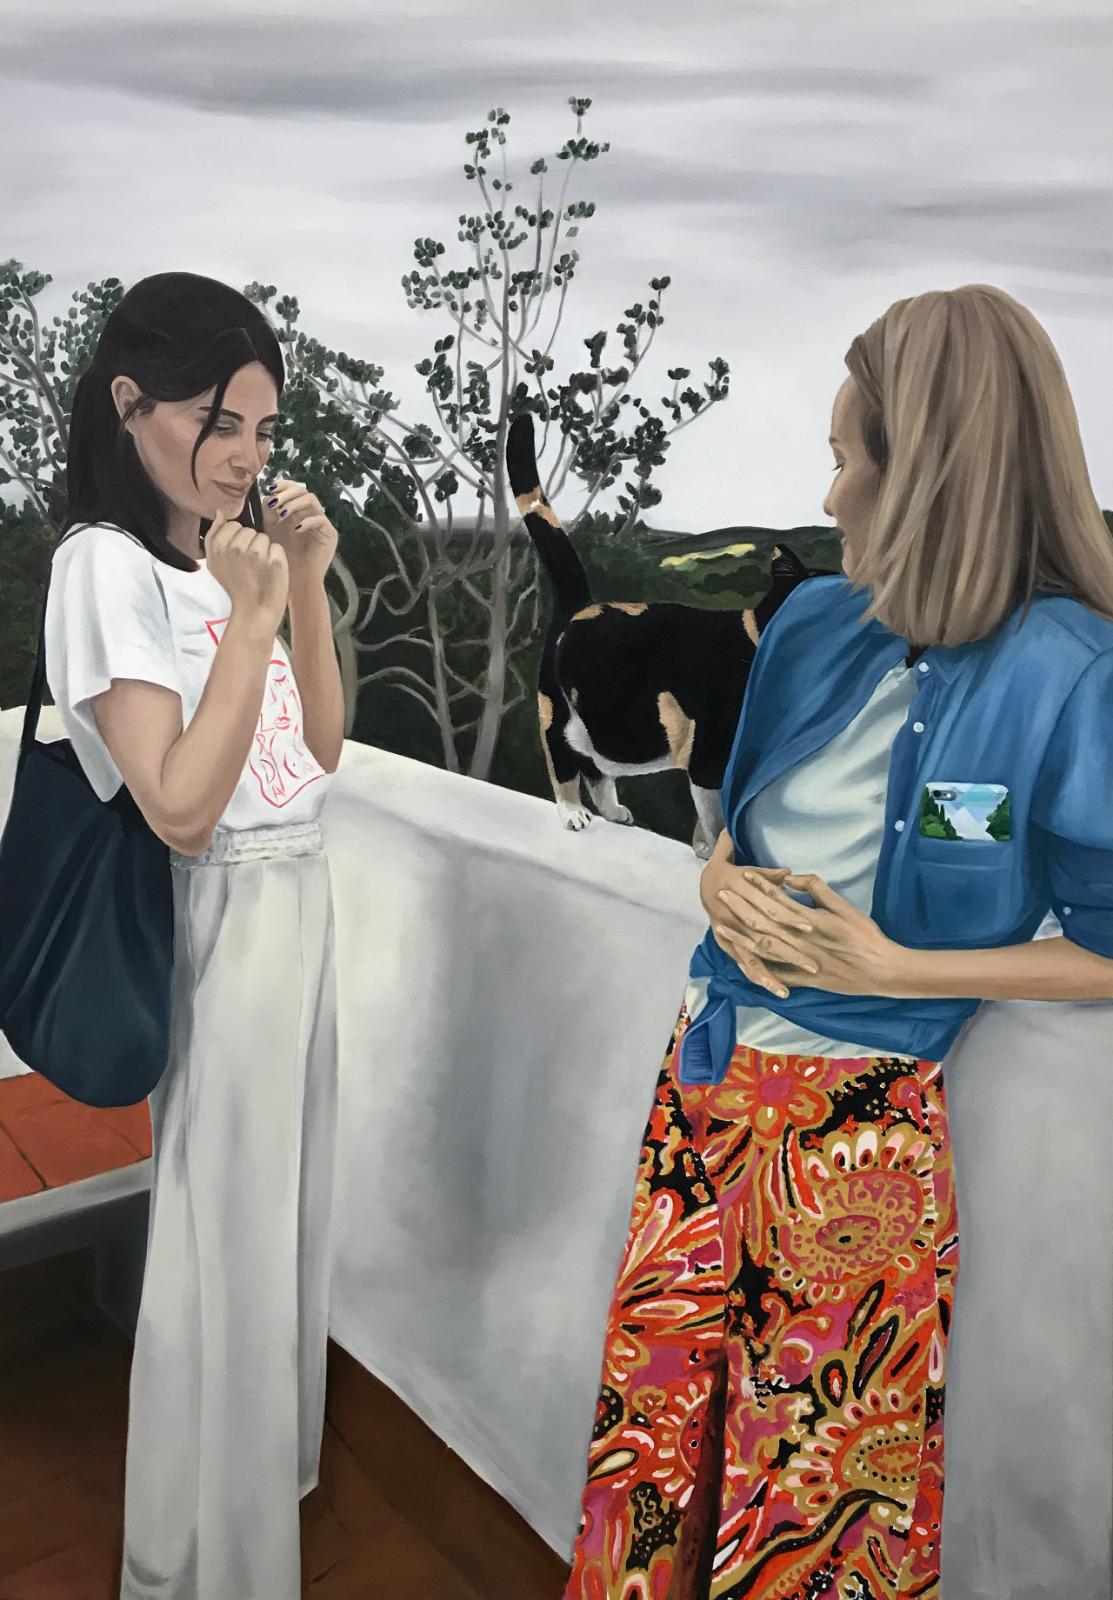 Janka Zöller, Alina and Kata on the terrace, 2019, Öl auf Leinwand, 200 cm x 140 cm